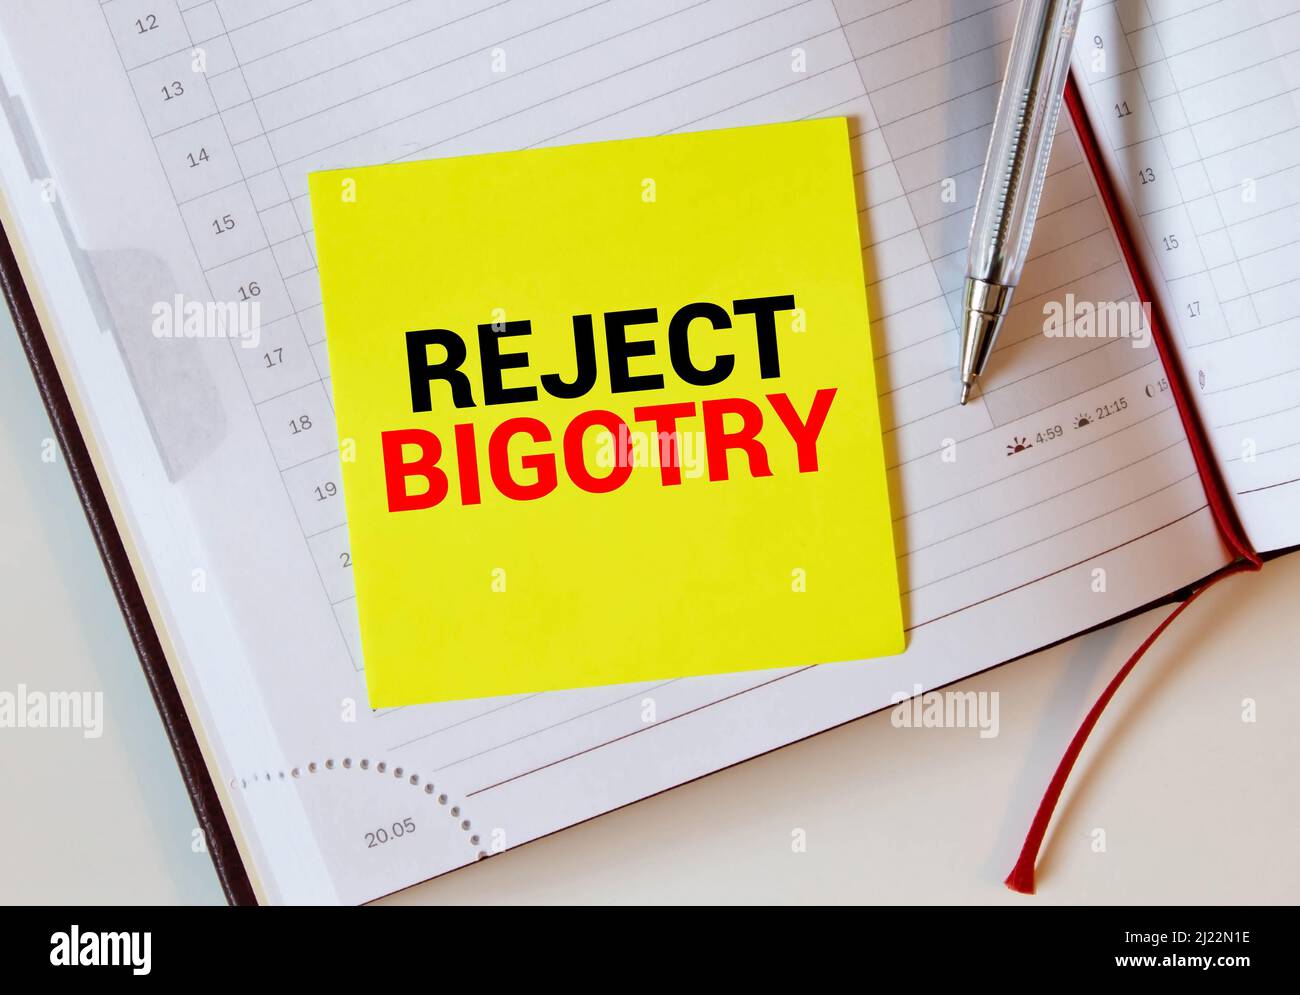 Text verhindern Bigotry in Blau unter einem Drahtgeflecht geschrieben Stockfoto